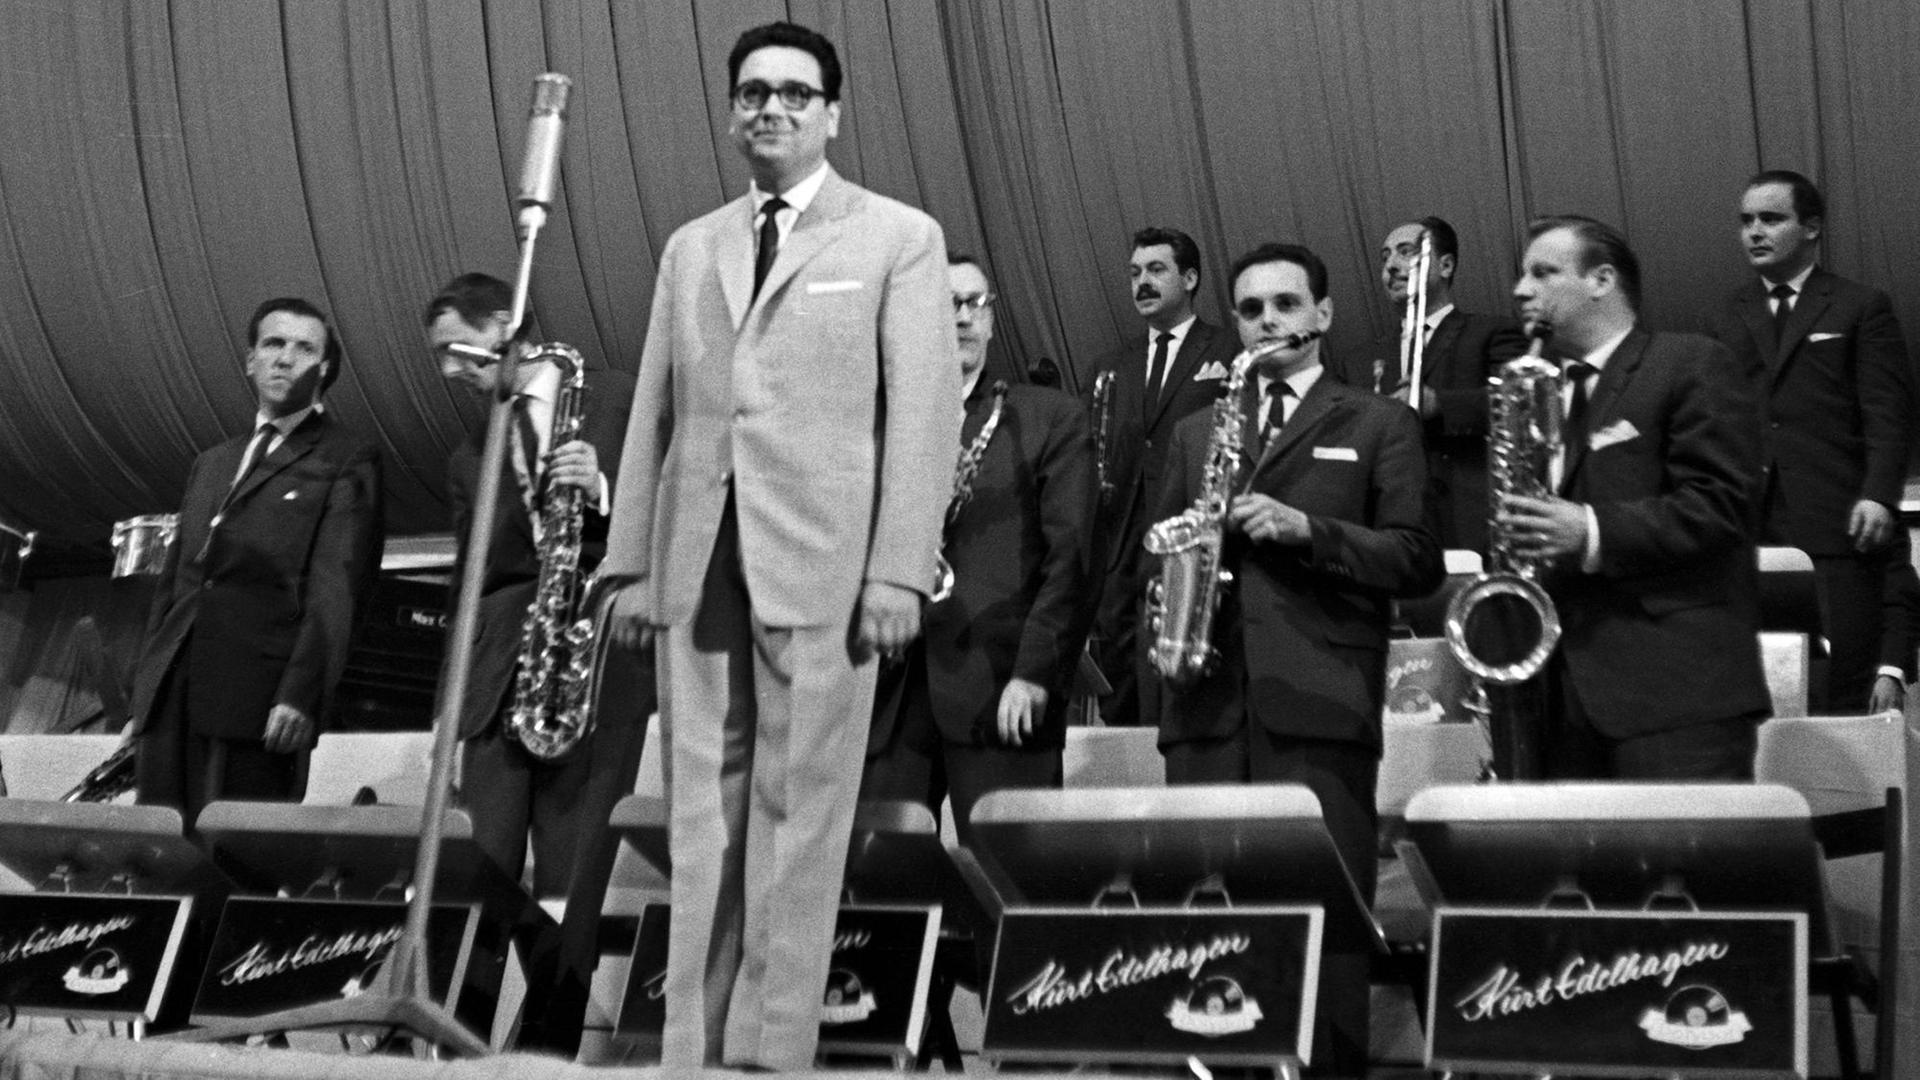 Ein altes s/w Bild, vermutlich 1950er oder 1960er Jahre. Ein Orchesterleiter im Anzug steht zum Publikum gewendet lächelnd vor der ebenfalls stehenden Band. Auf den Pulten der Bläser der Schriftzug "Kurt Edelhagen".